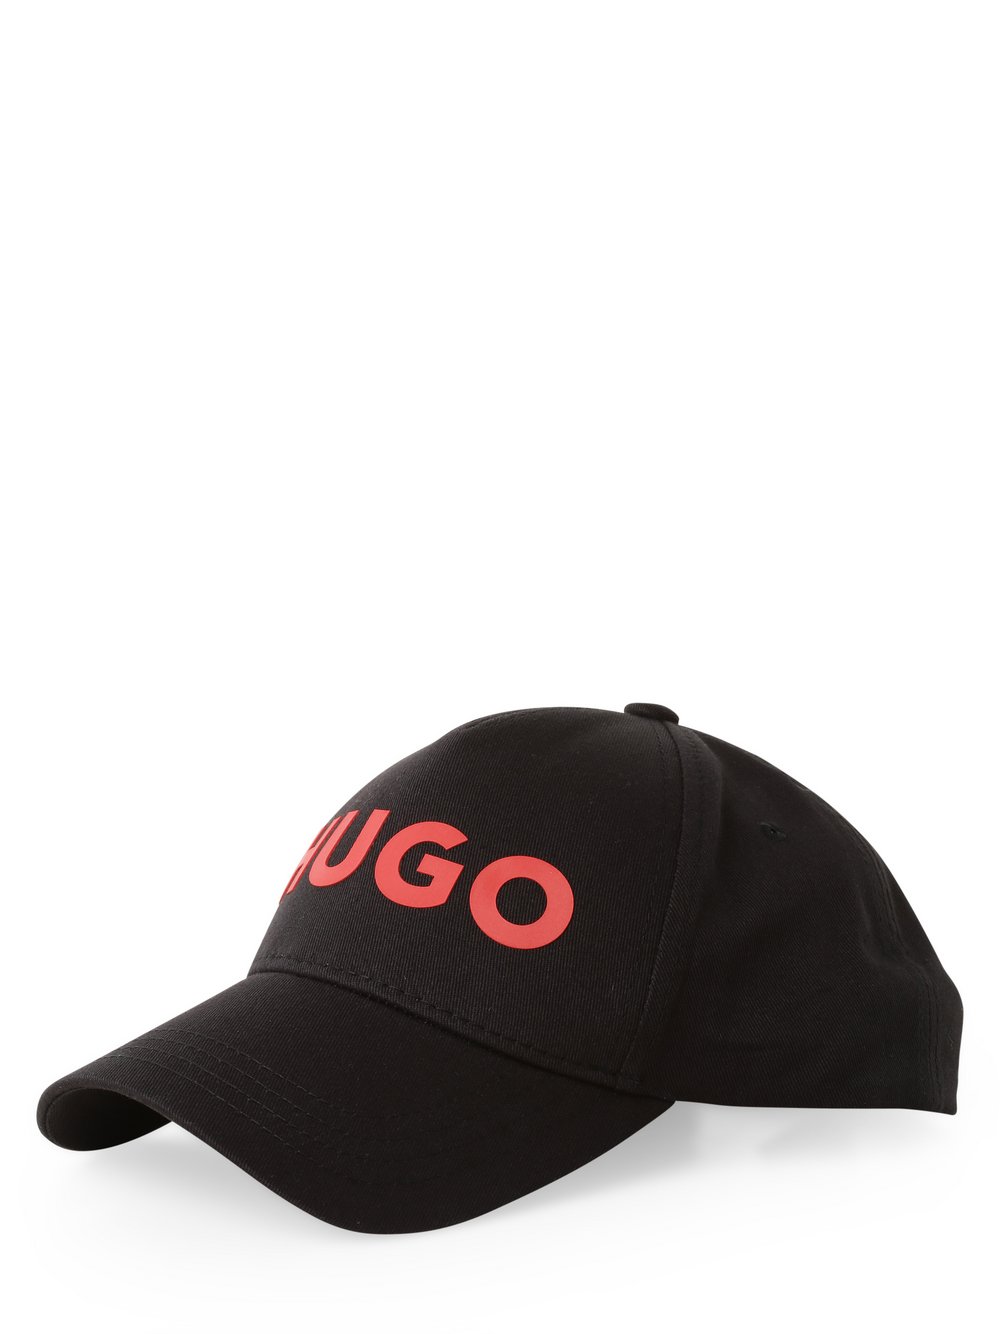 HUGO - Męska czapka z daszkiem, czarny